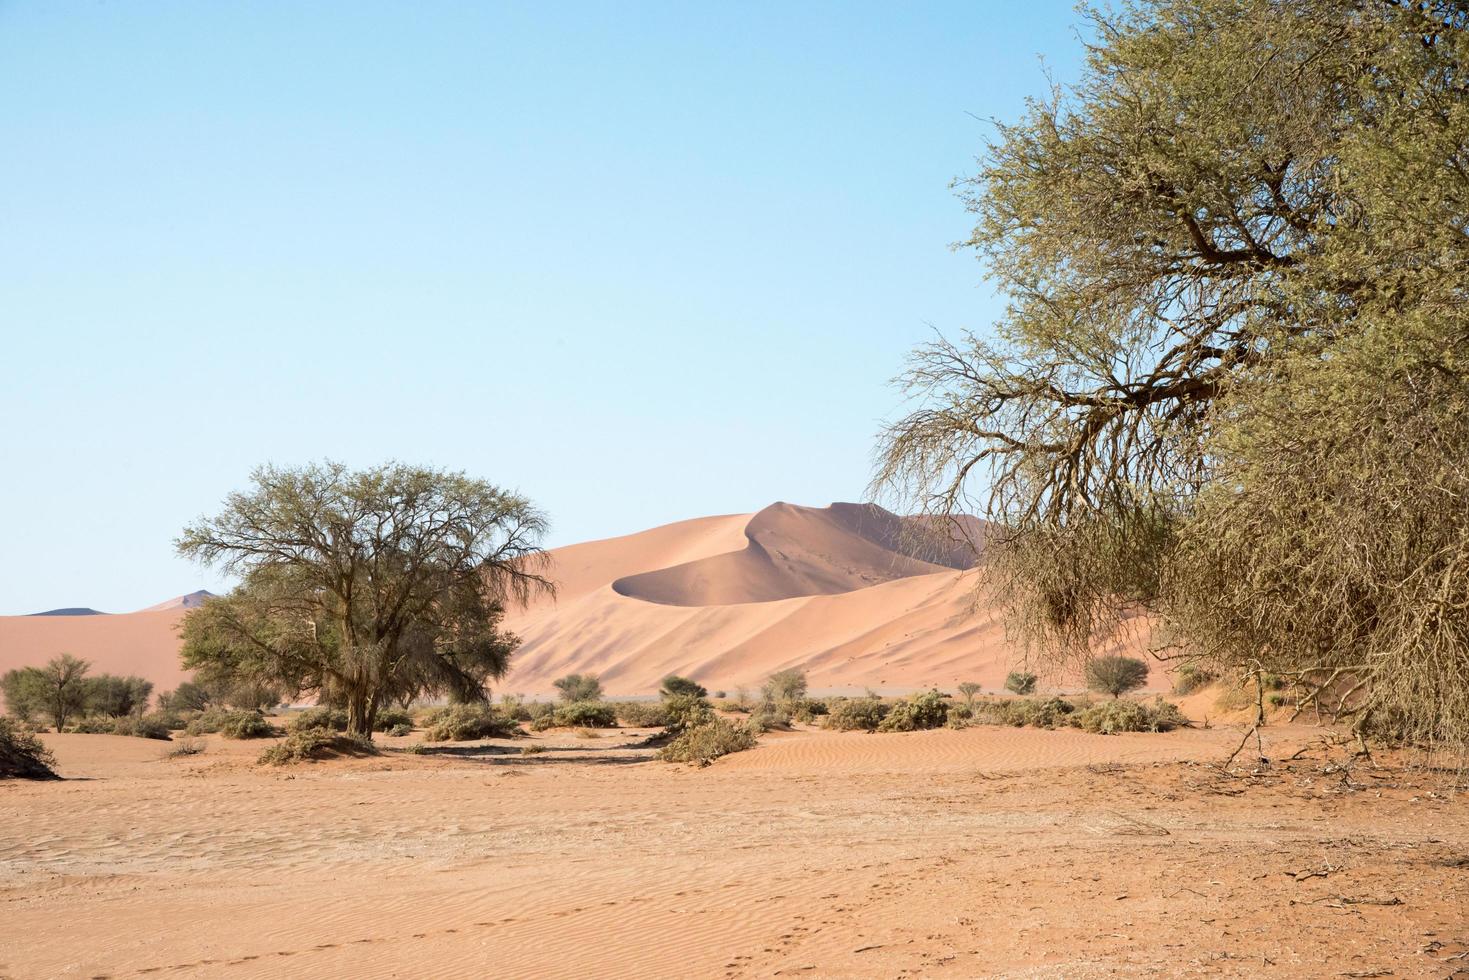 Landscape of Namib desert. Sand dunes and trees. Namibia photo